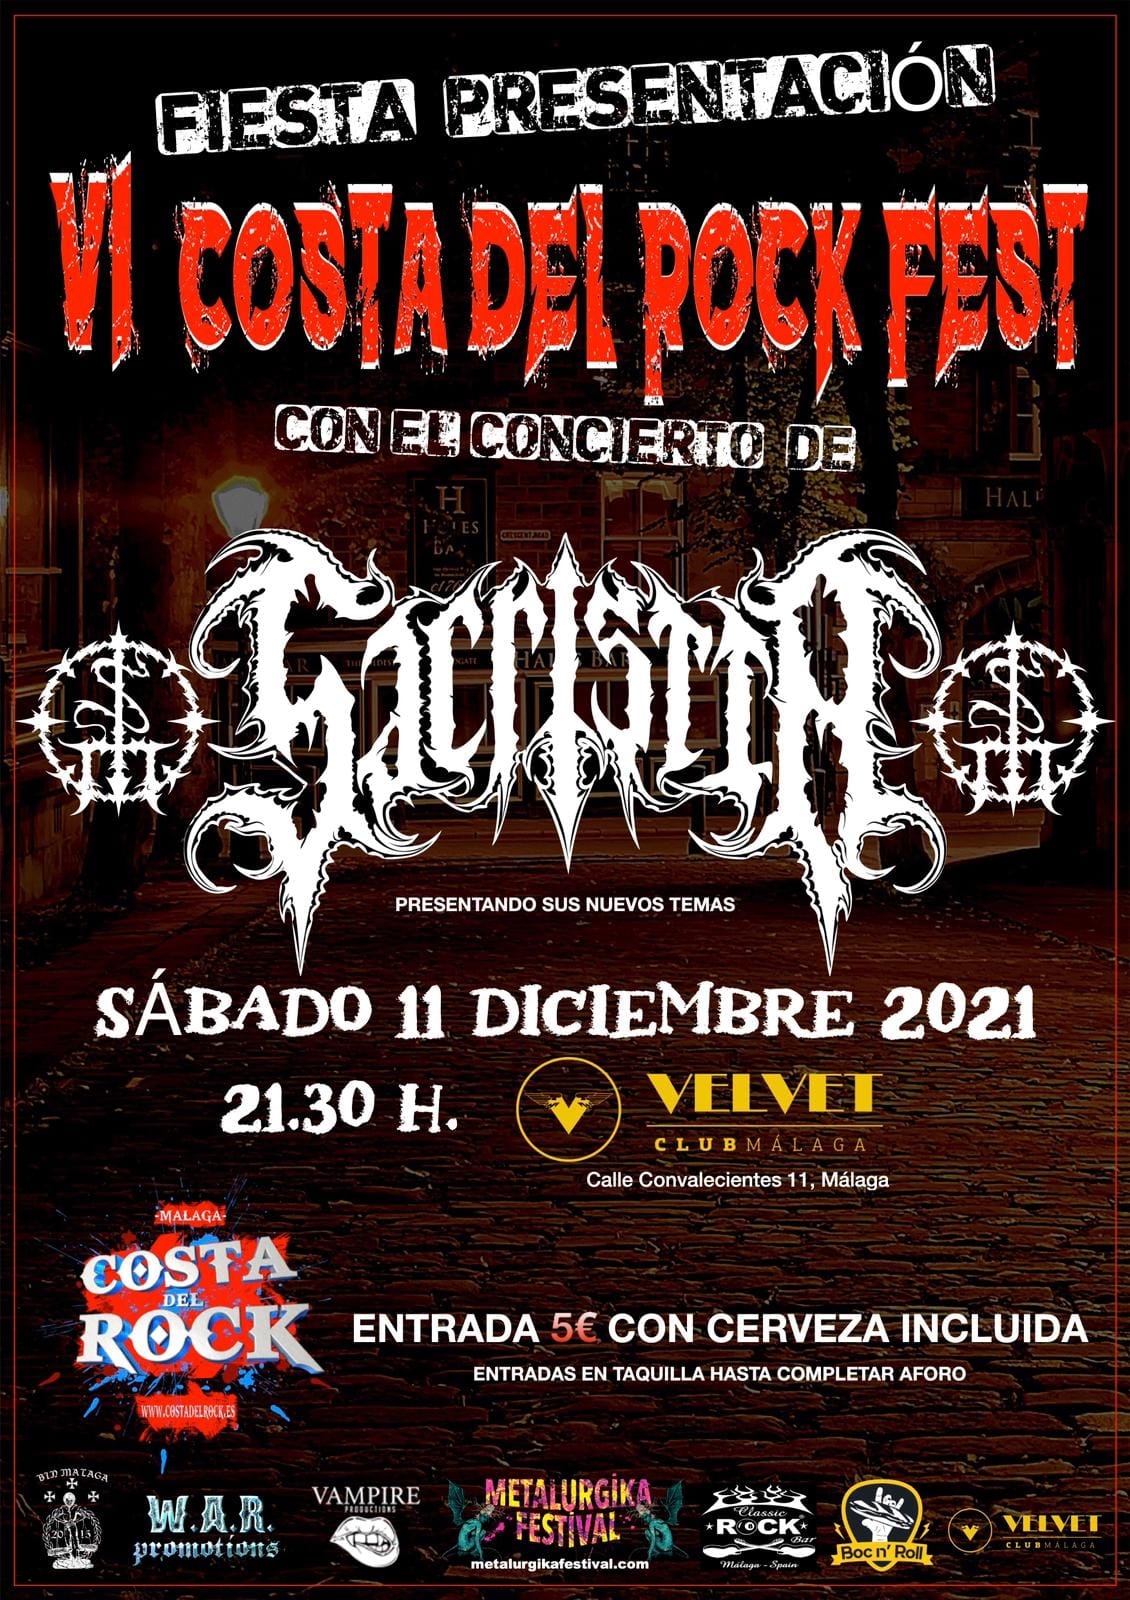 VI Costa Del Rock Fest: Fiesta presentación el 11 de diciembre con Sacristía